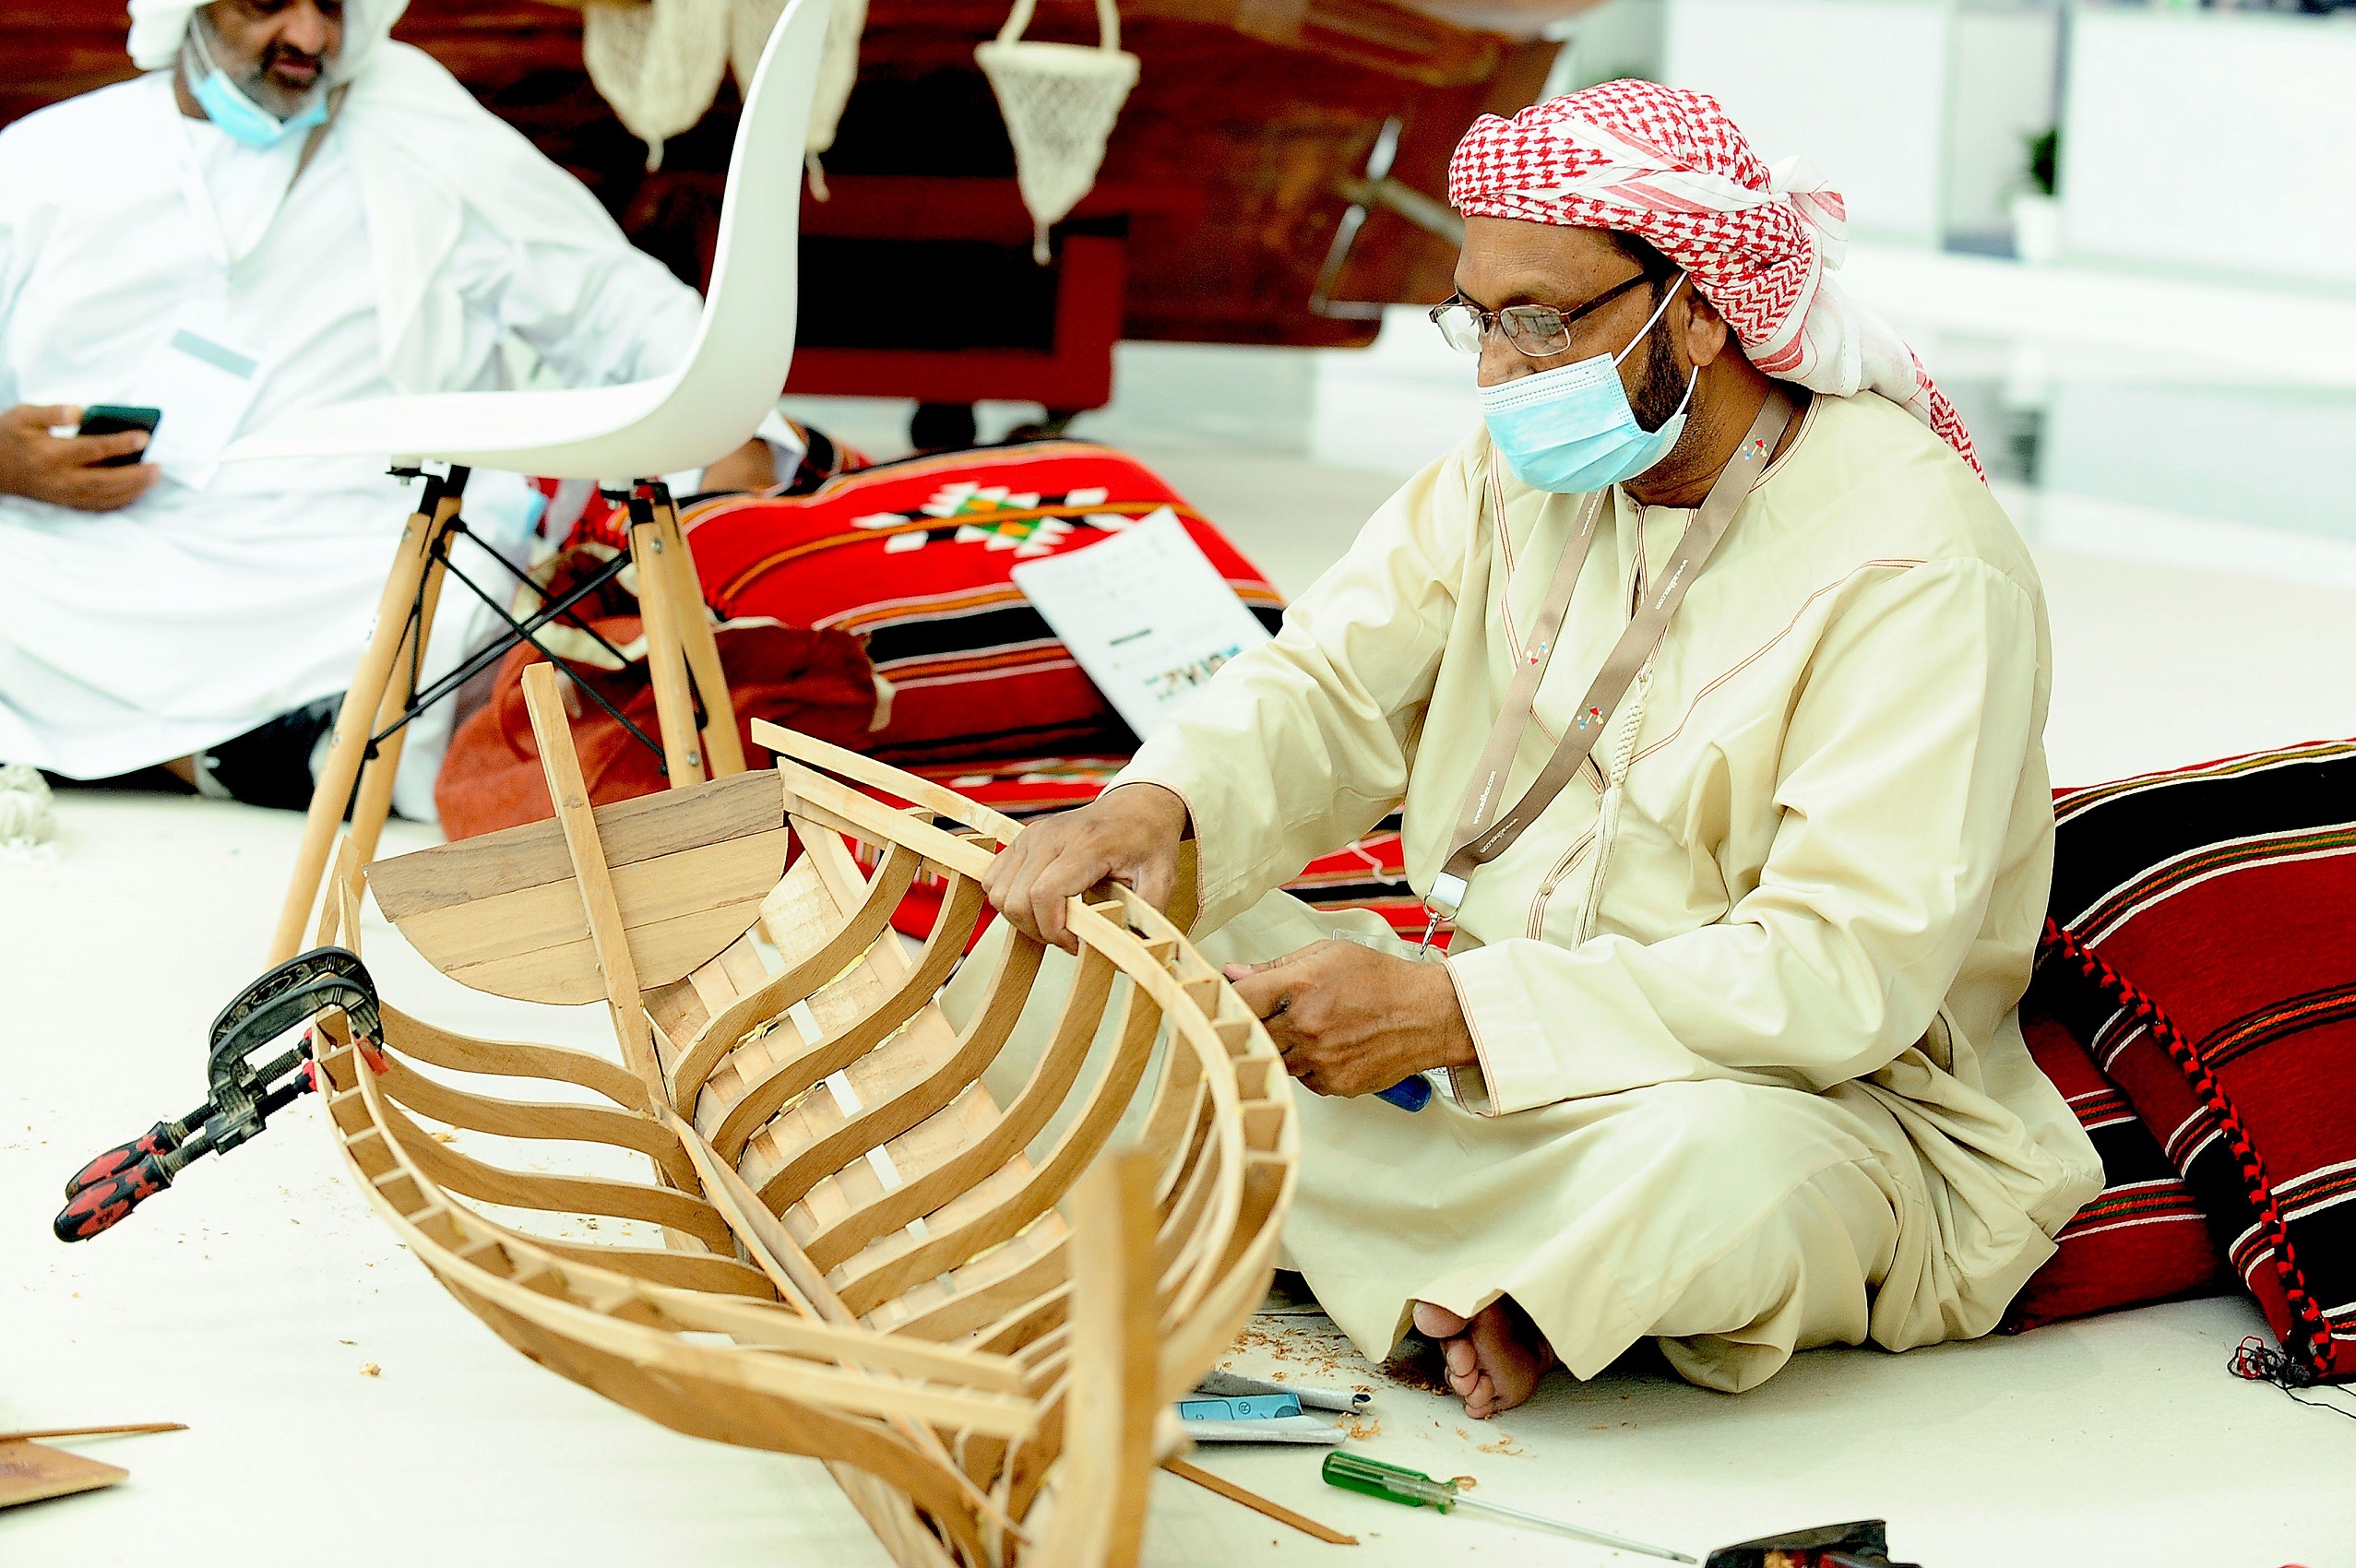 قطاع الفنون والحرف اليدوية في معرض أبوظبي للصيد يستعد لاستقطاب الزوار والسياح